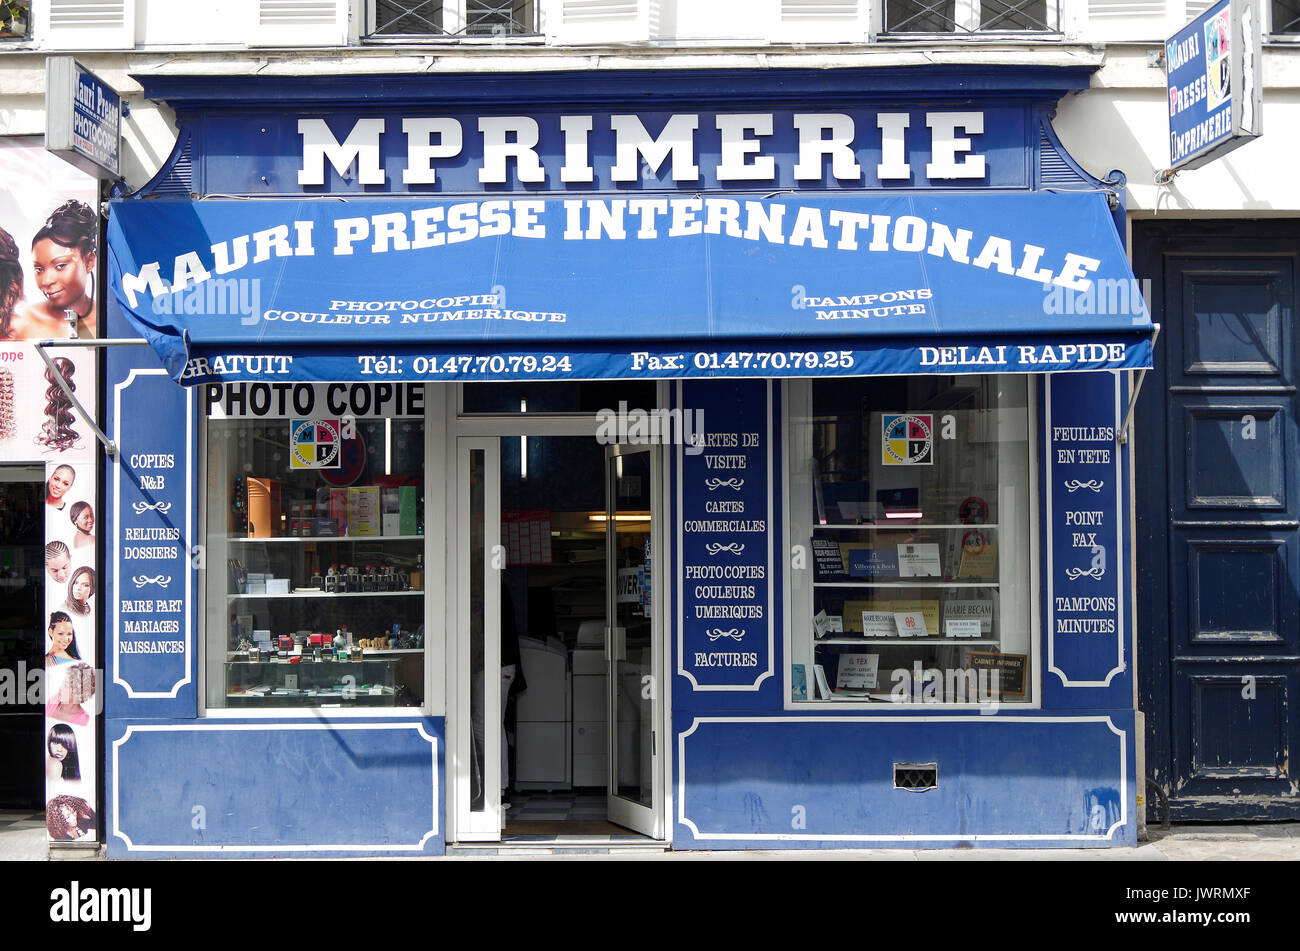 Mauri Presse Internationale, pequeño barrio imprenta, toldos y toda la  tienda frente en azul, con letras blancas Fotografía de stock - Alamy